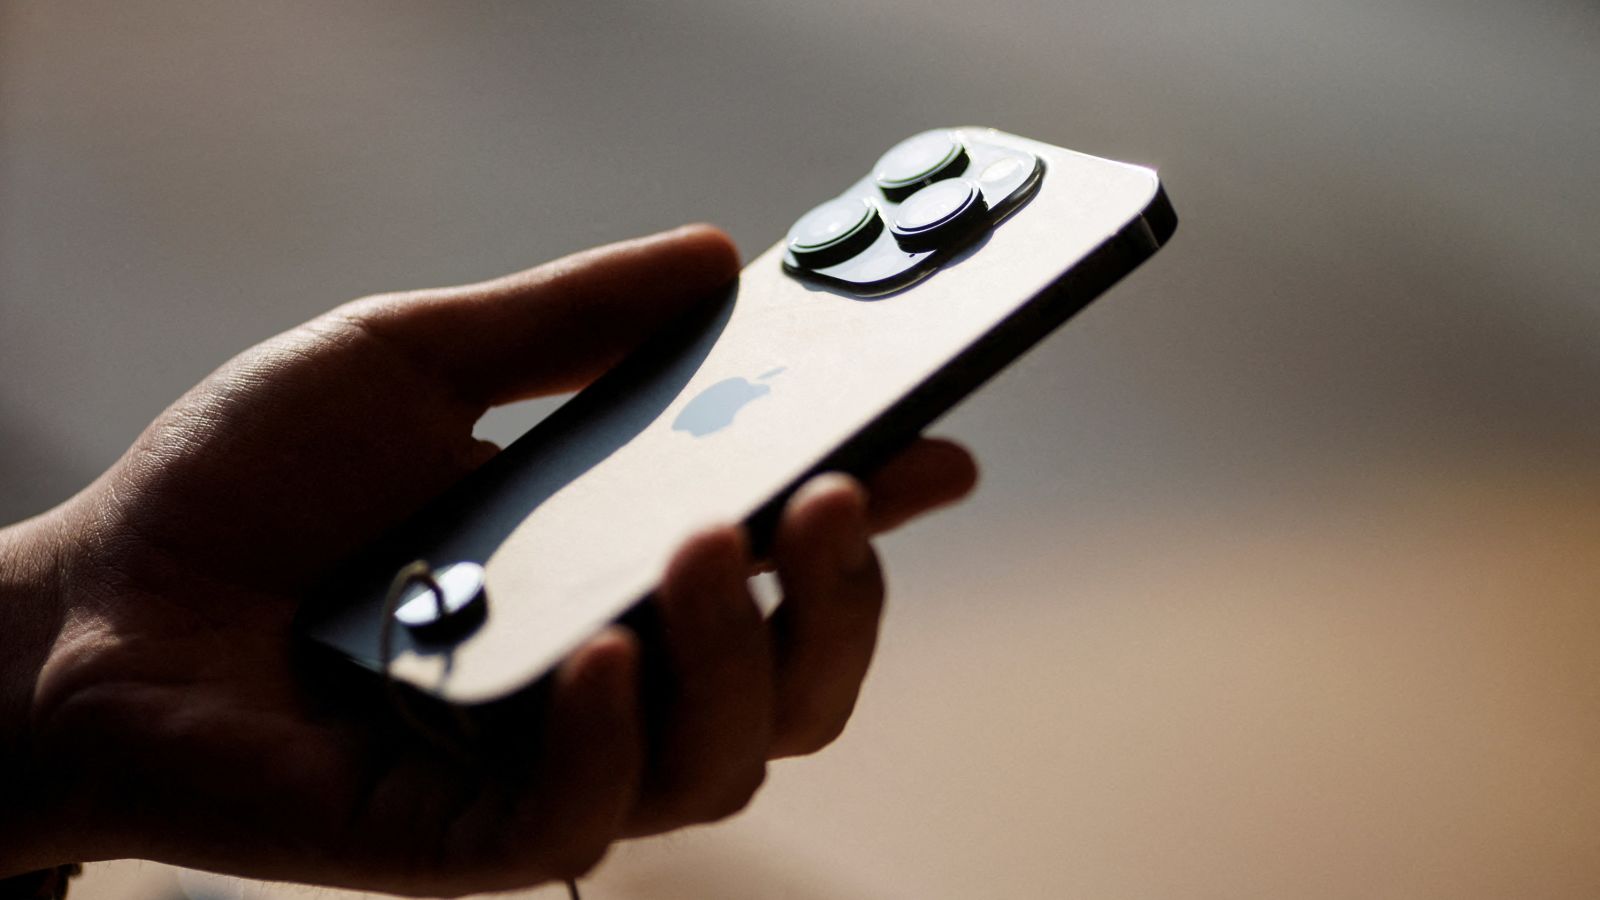 Apple comienza su guerra contra los iPhone de segunda mano